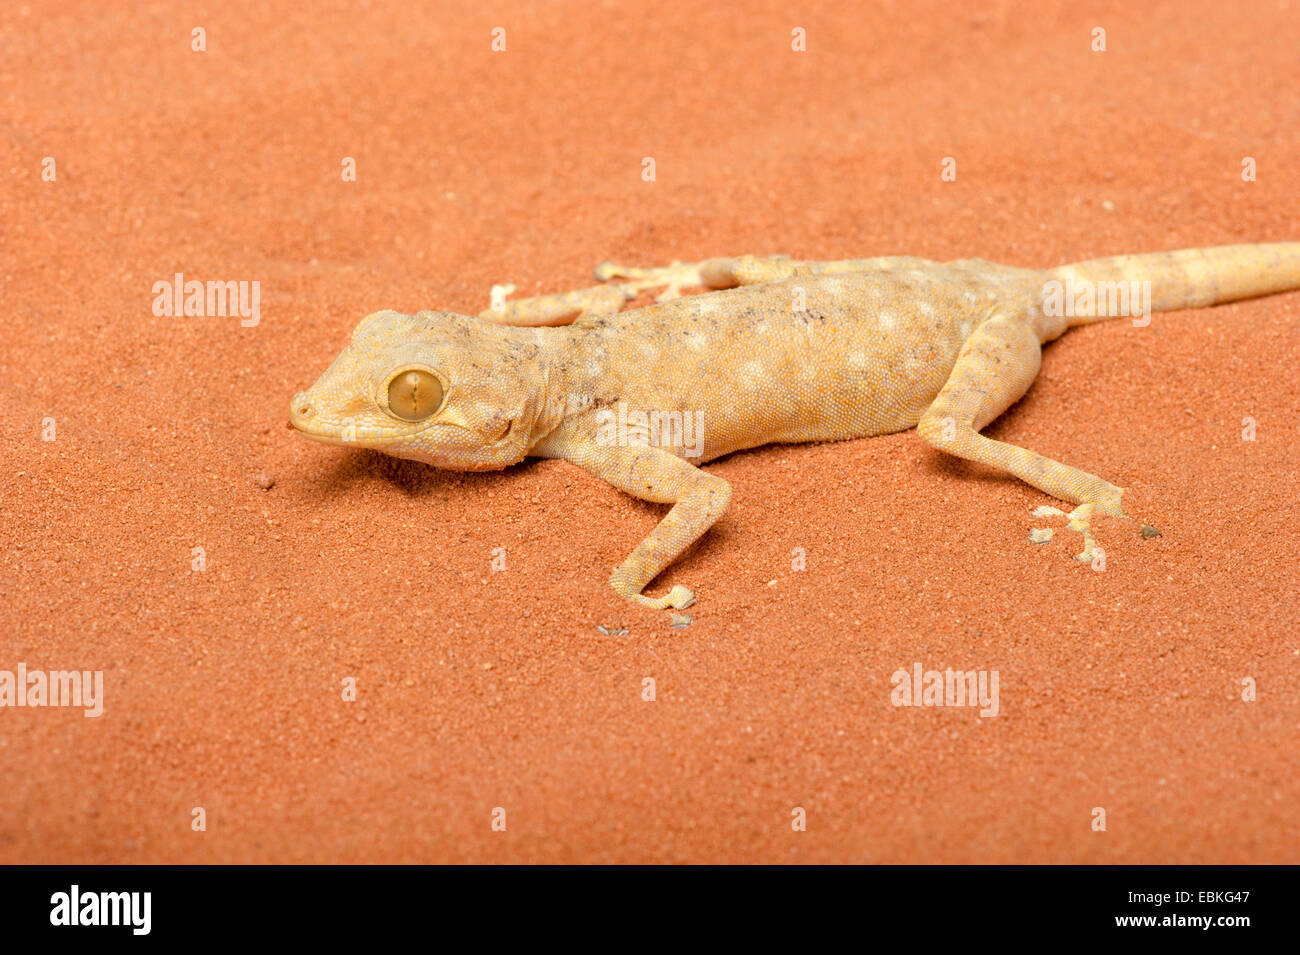 Fan-toed gecko, Yellow fan-fingered gecko (Ptyodactylus hasselquistii), on sand Stock Photo